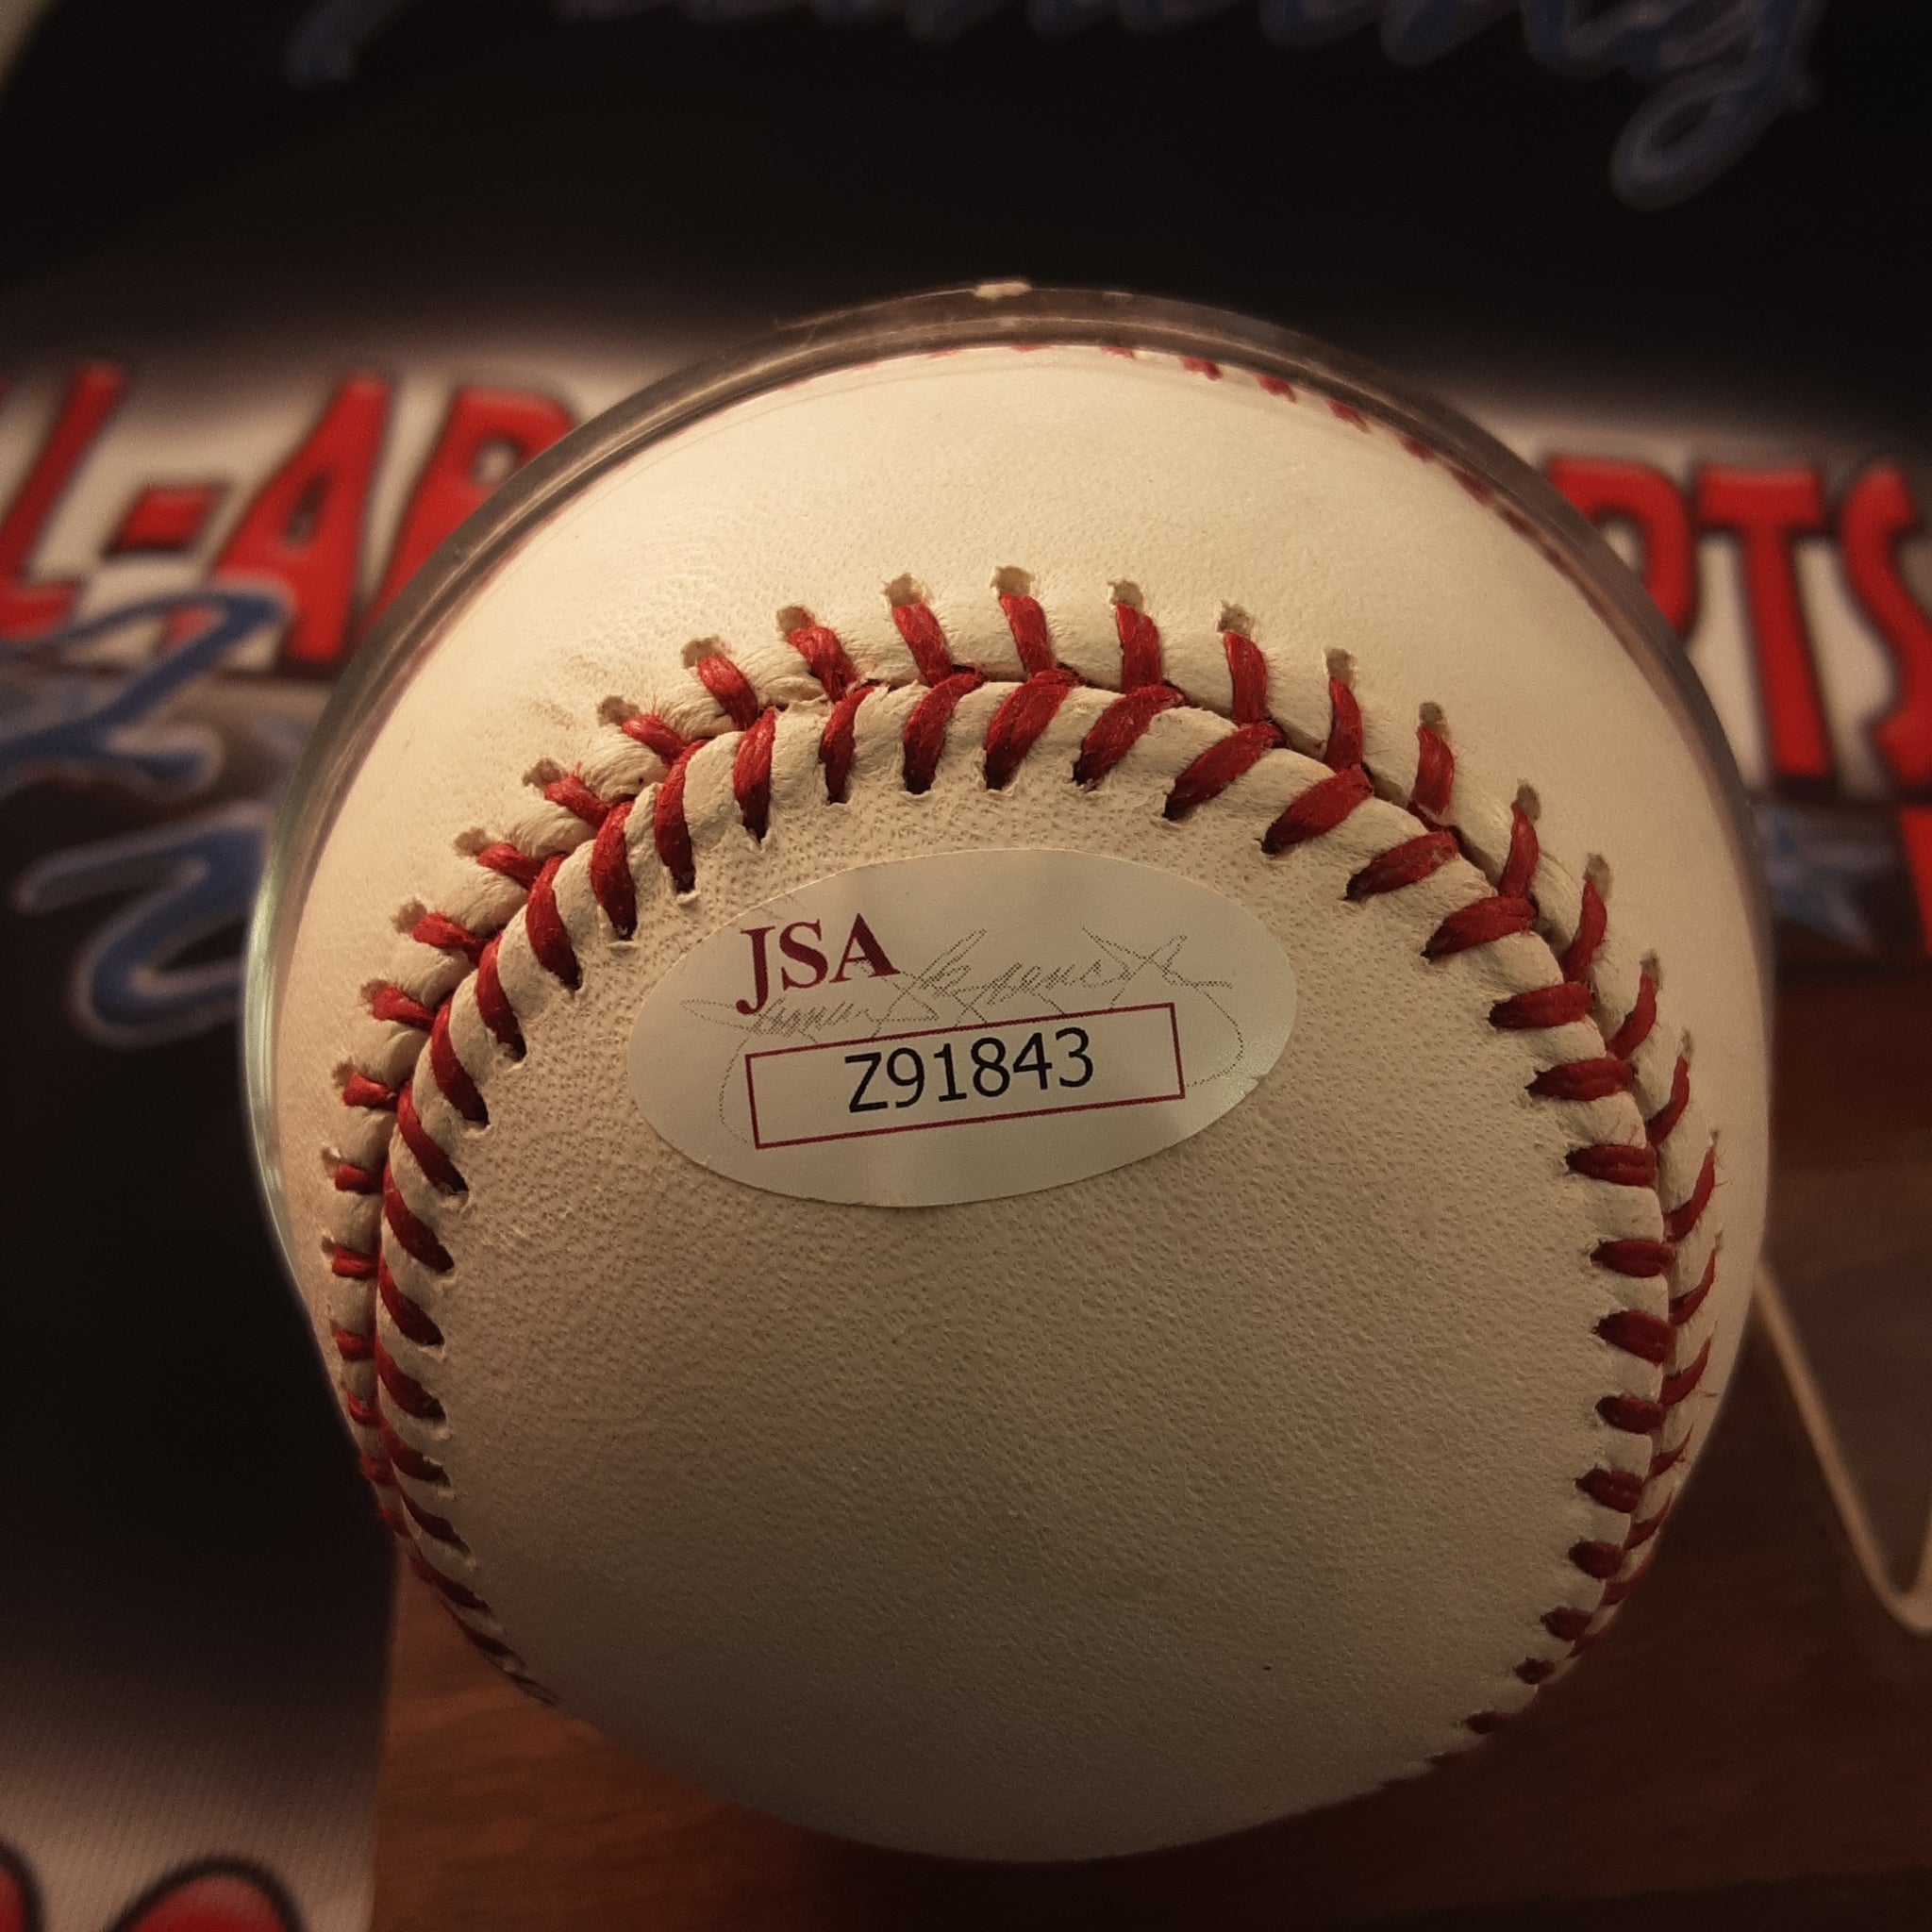 Albert Pujols Autographed Marucci 34 Signed Baseball Bat Beckett COA